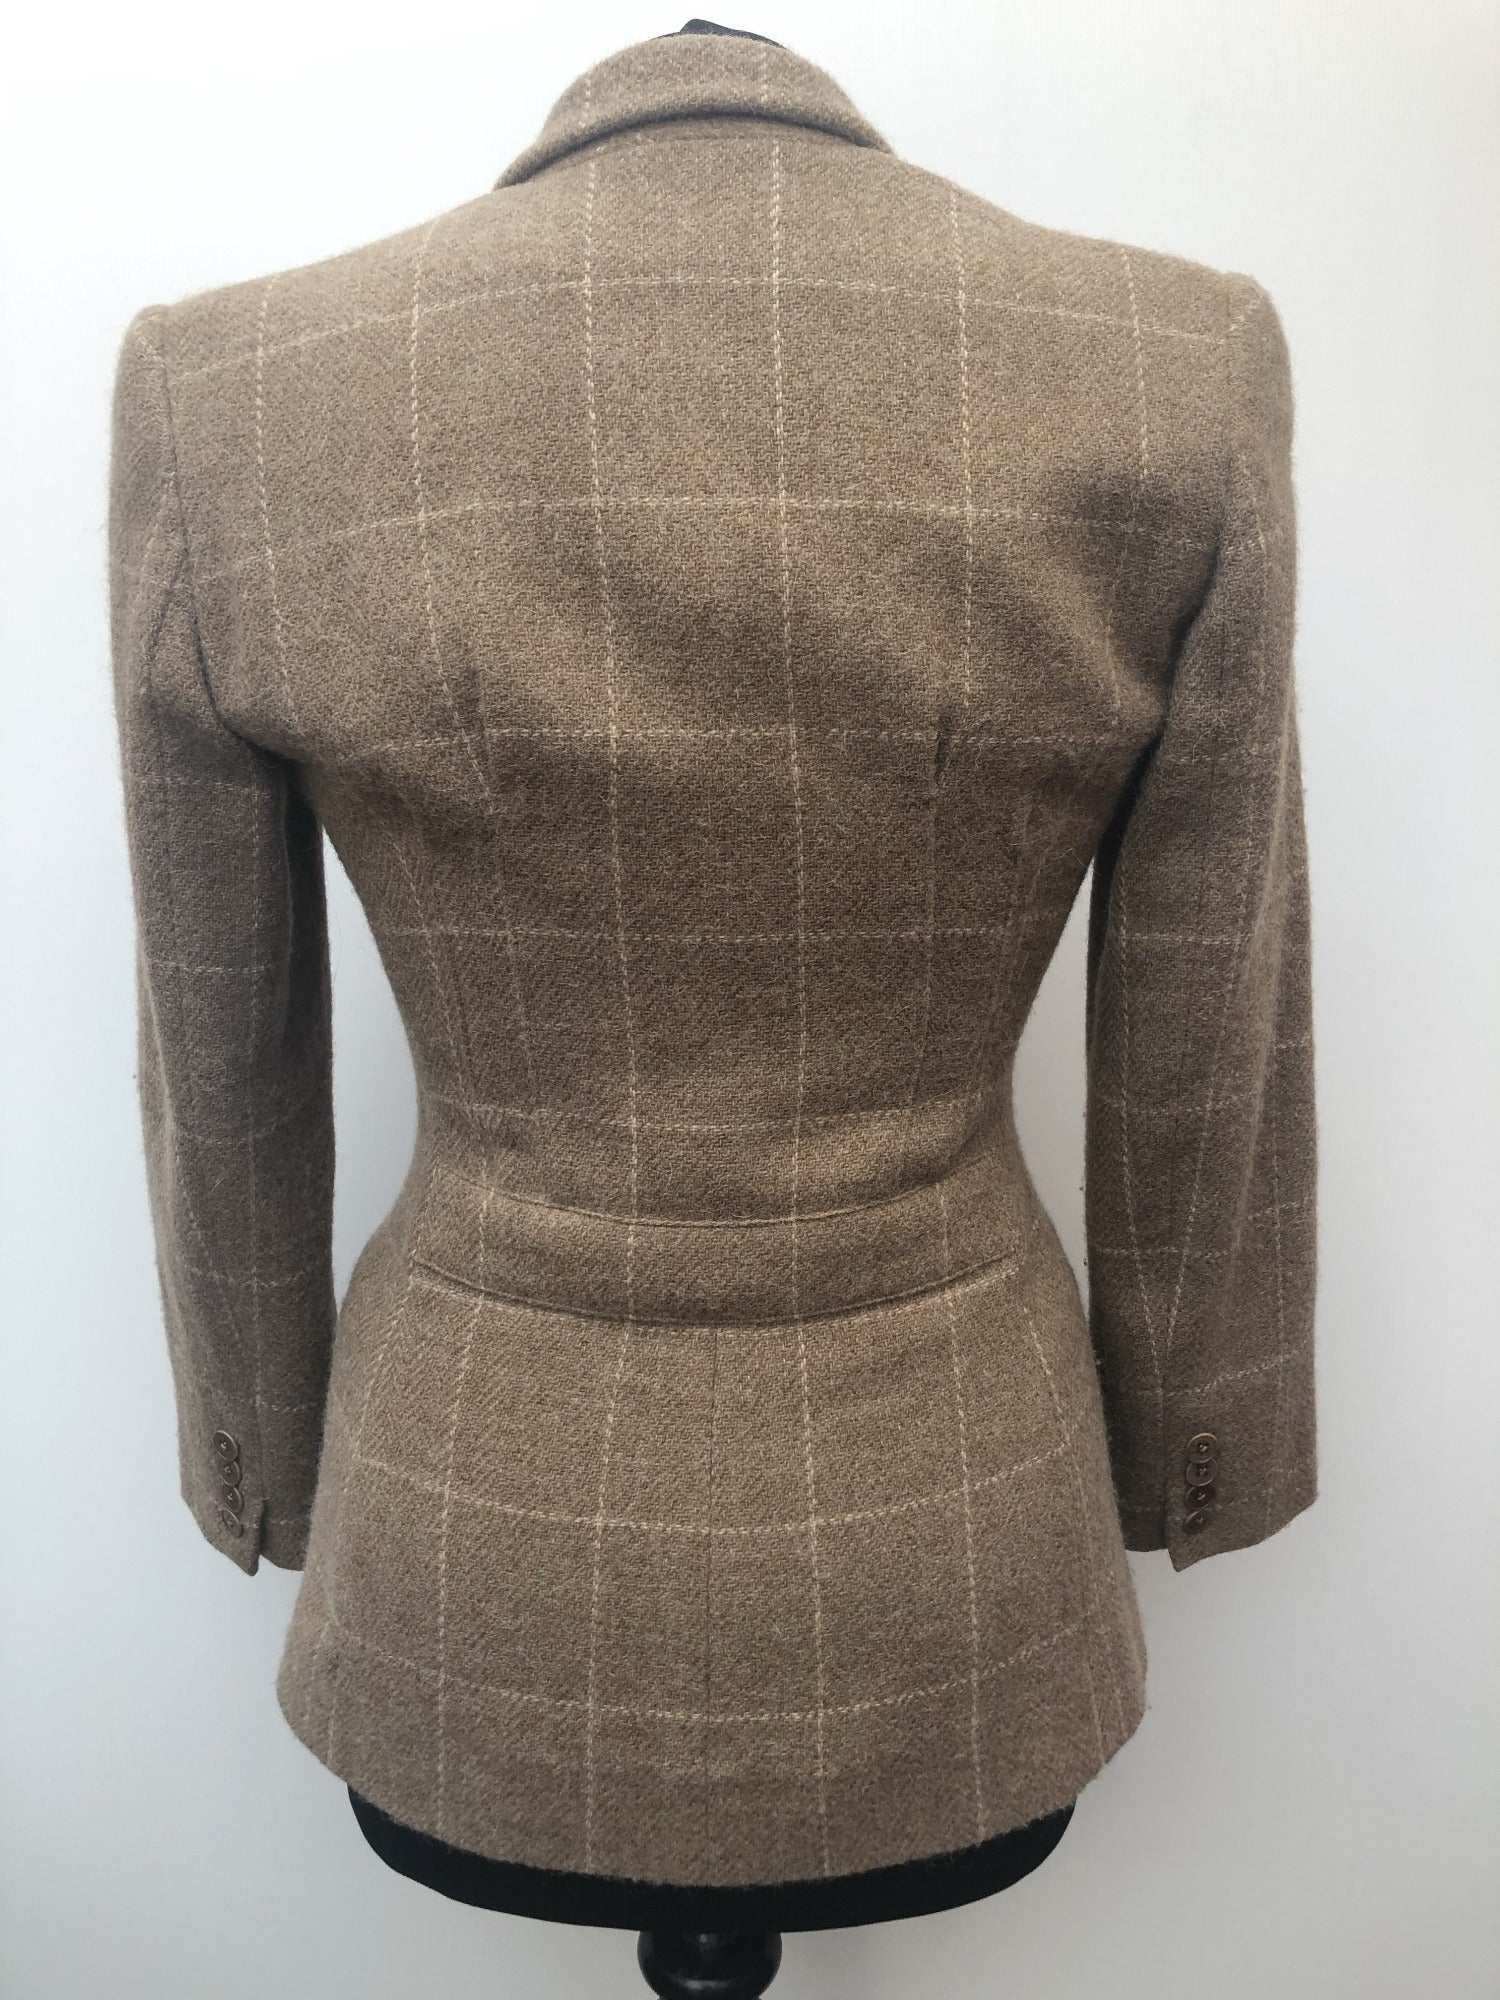 fitted  Wool Blend  womens  Urban Village Vintage  Ralph Lauren  Jacket  Grey  check  blazer jacket  Blazer  Alapaca  8